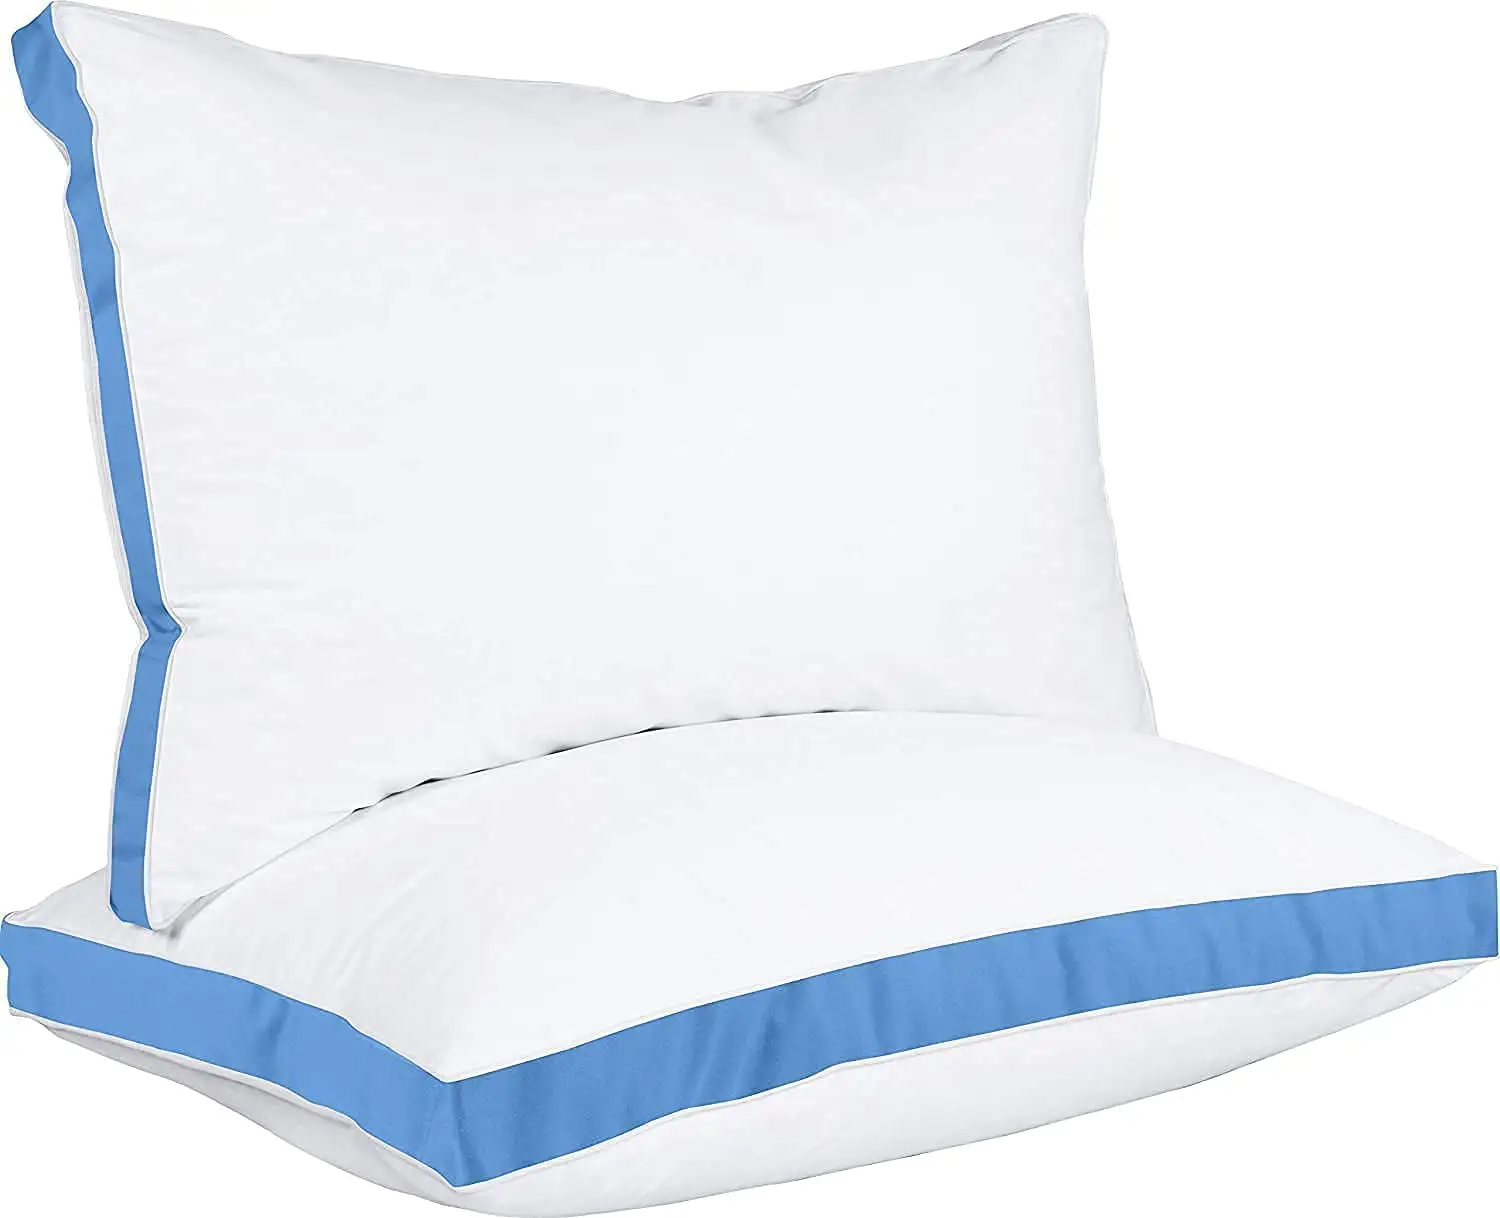 Juego de 2 almohadas de cama para dormir, tamaño Queen (azul), refrigeración de calidad de Hotel, almohada con fuelle para espalda, estómago o lado